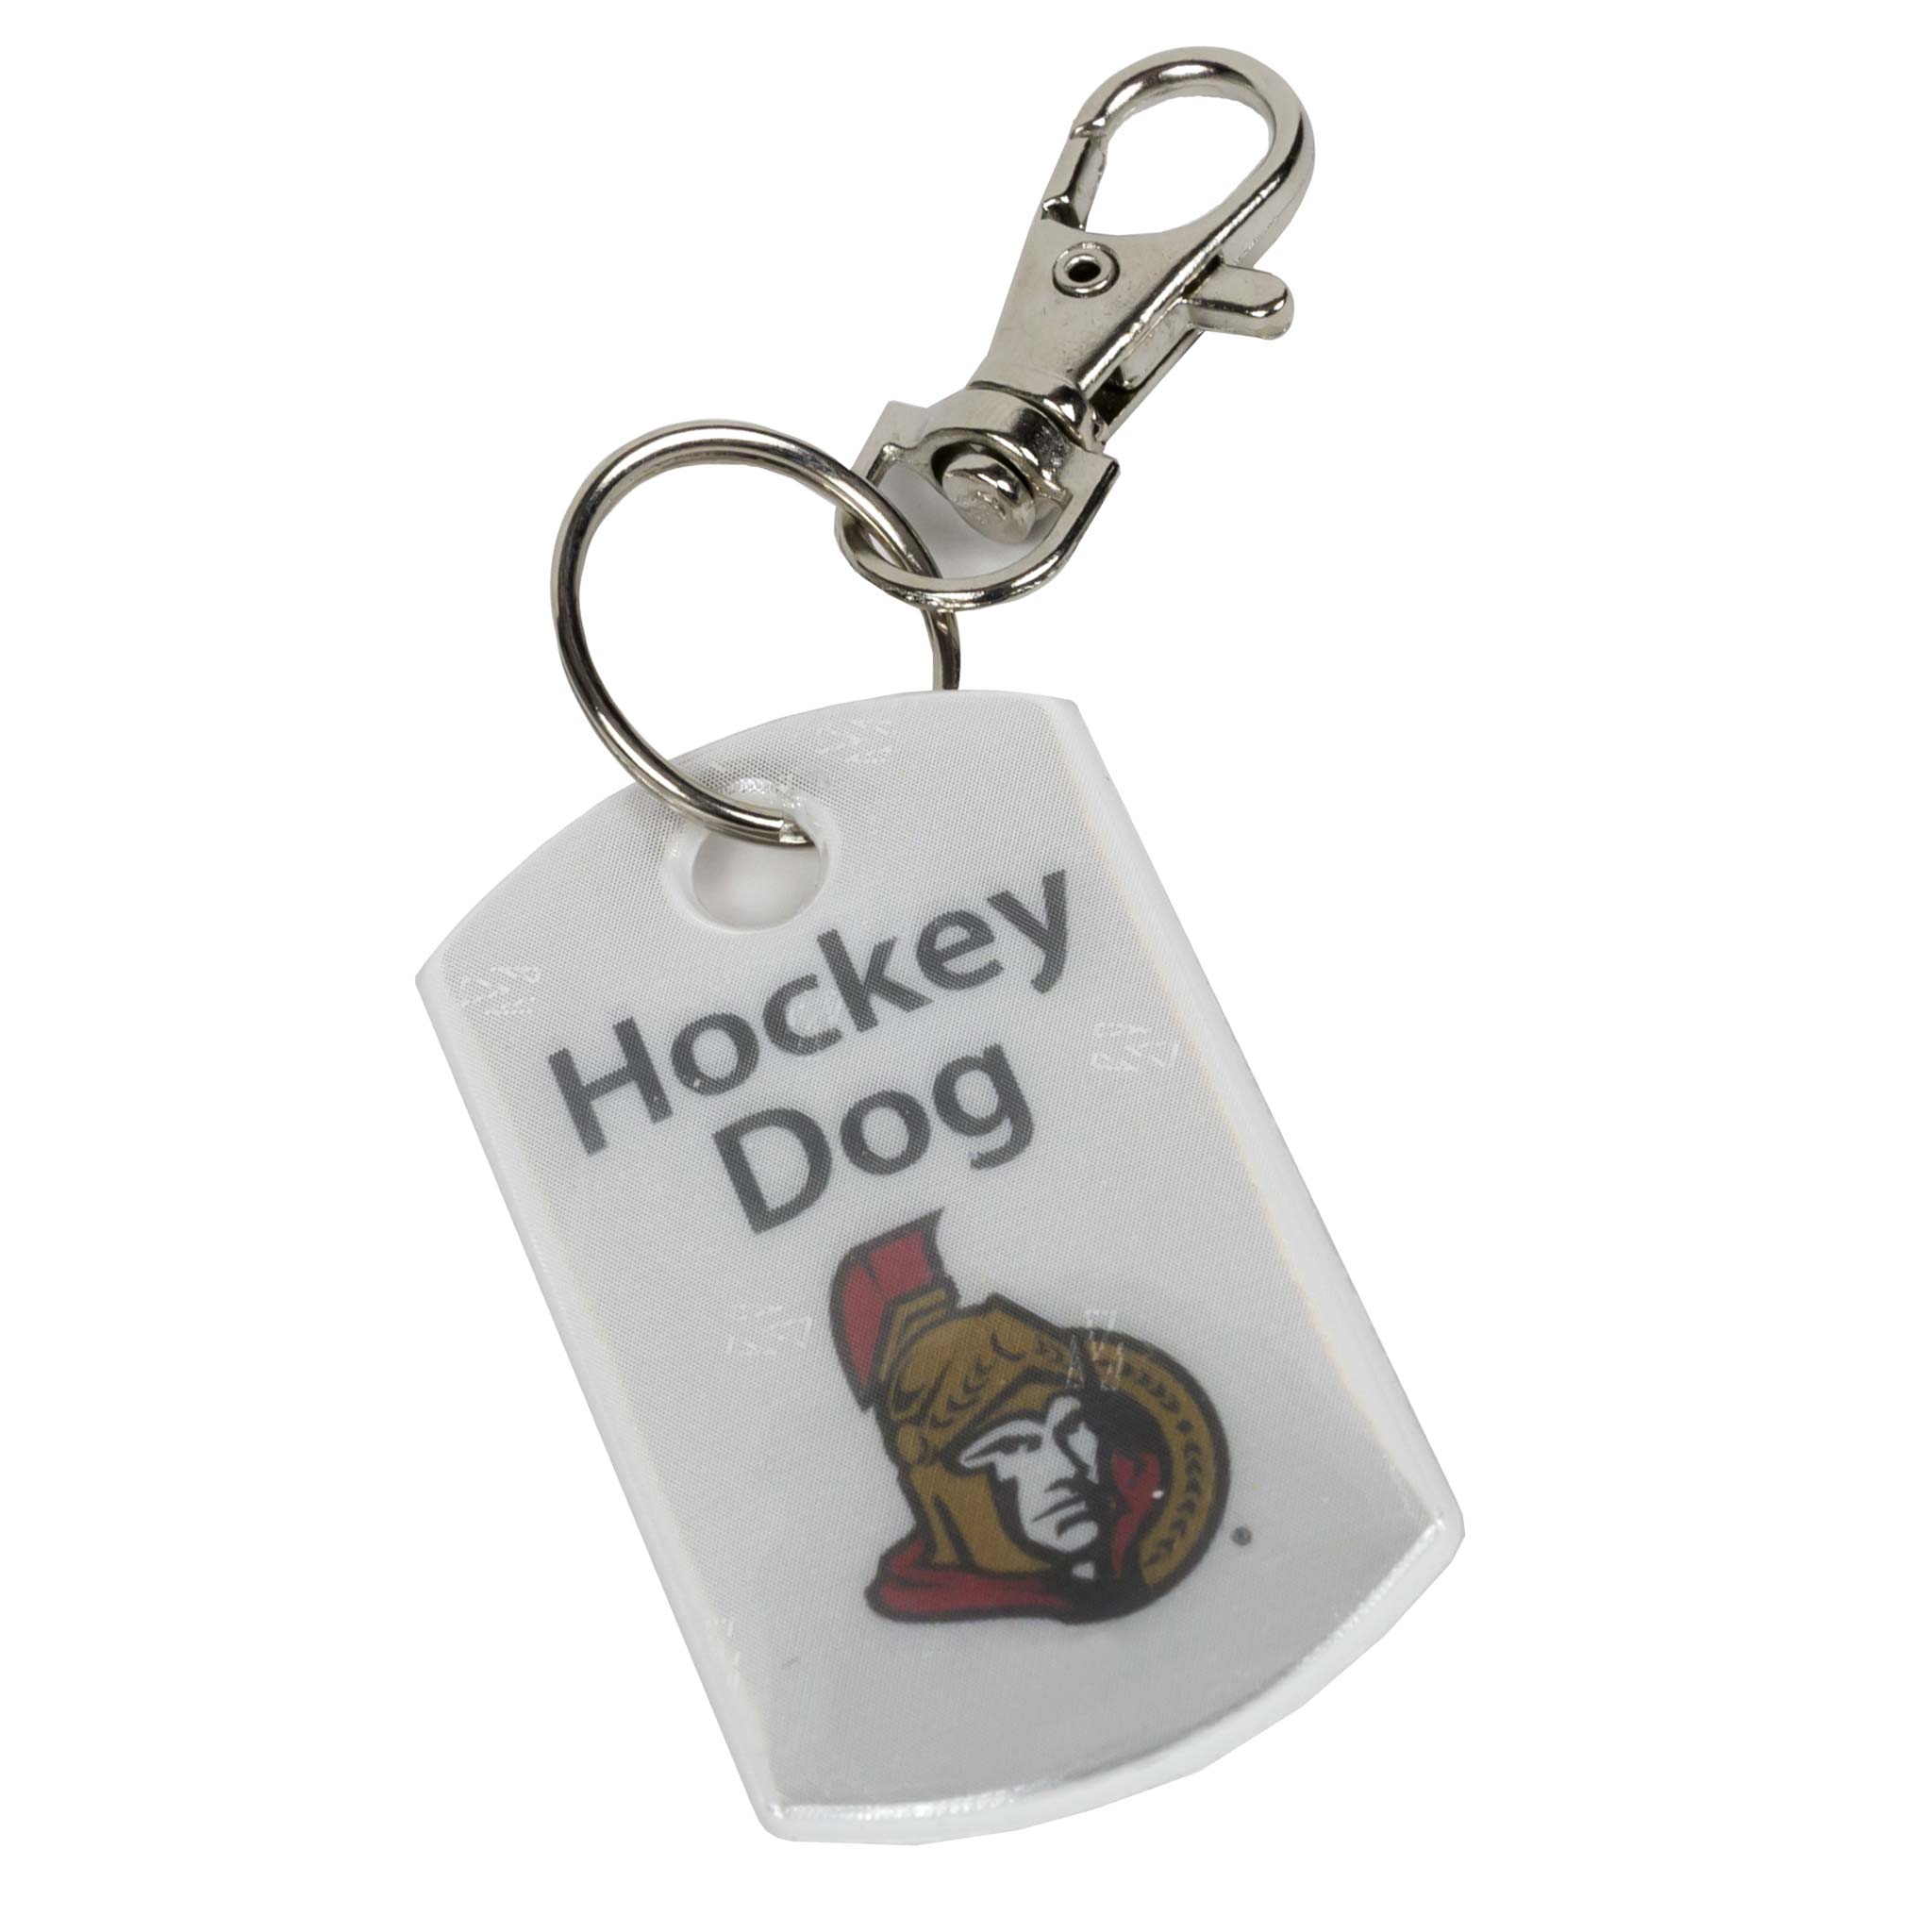 Ottawa_Senators_Hockey_Dog_Back